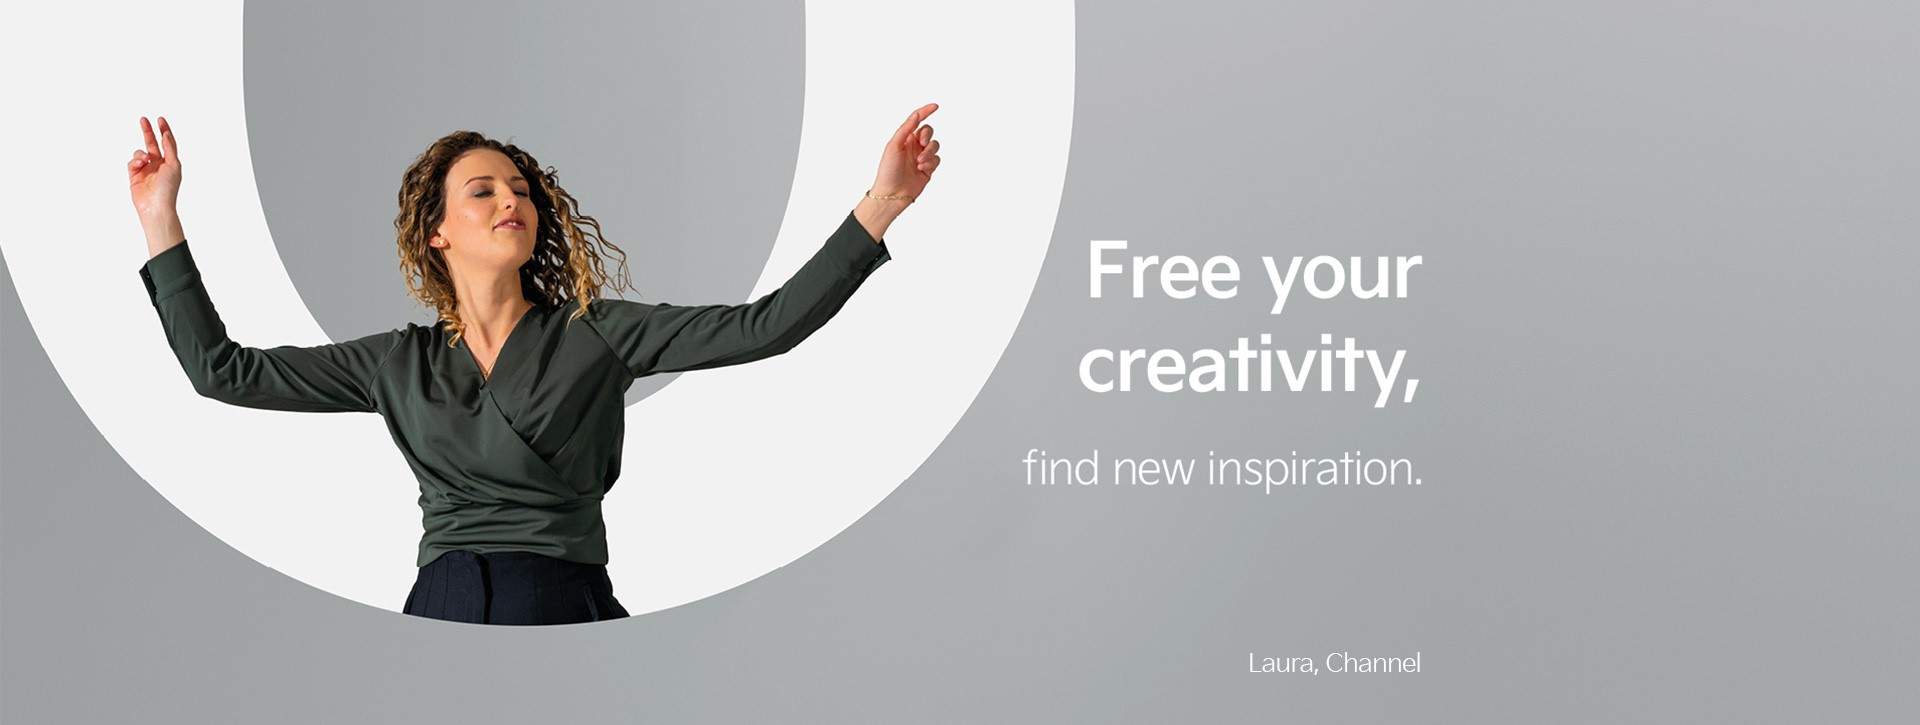 Laura aus unserem Channel-Team tanzt vor dem Buchstaben "O". Neben ihr steht die Aussage "Befreie deine Kreativität - finde neue Inspiration".